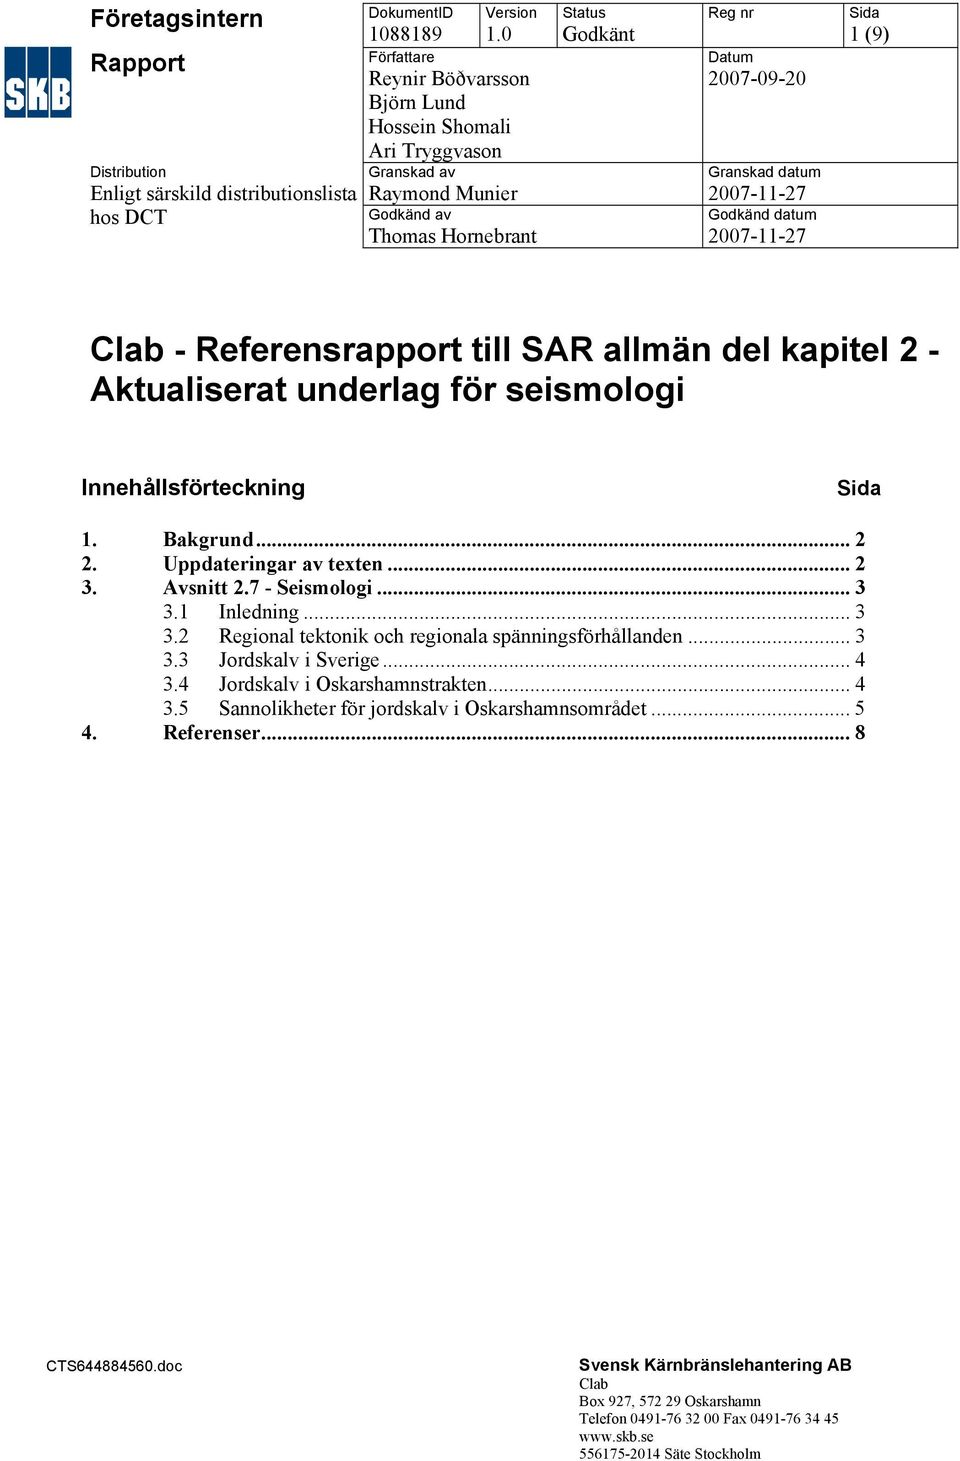 2007-11-27 Godkänd datum 2007-11-27 Sida 1 (9) Clab - Referensrapport till SAR allmän del kapitel 2 - Aktualiserat underlag för seismologi Innehållsförteckning Sida 1. Bakgrund... 2 2.